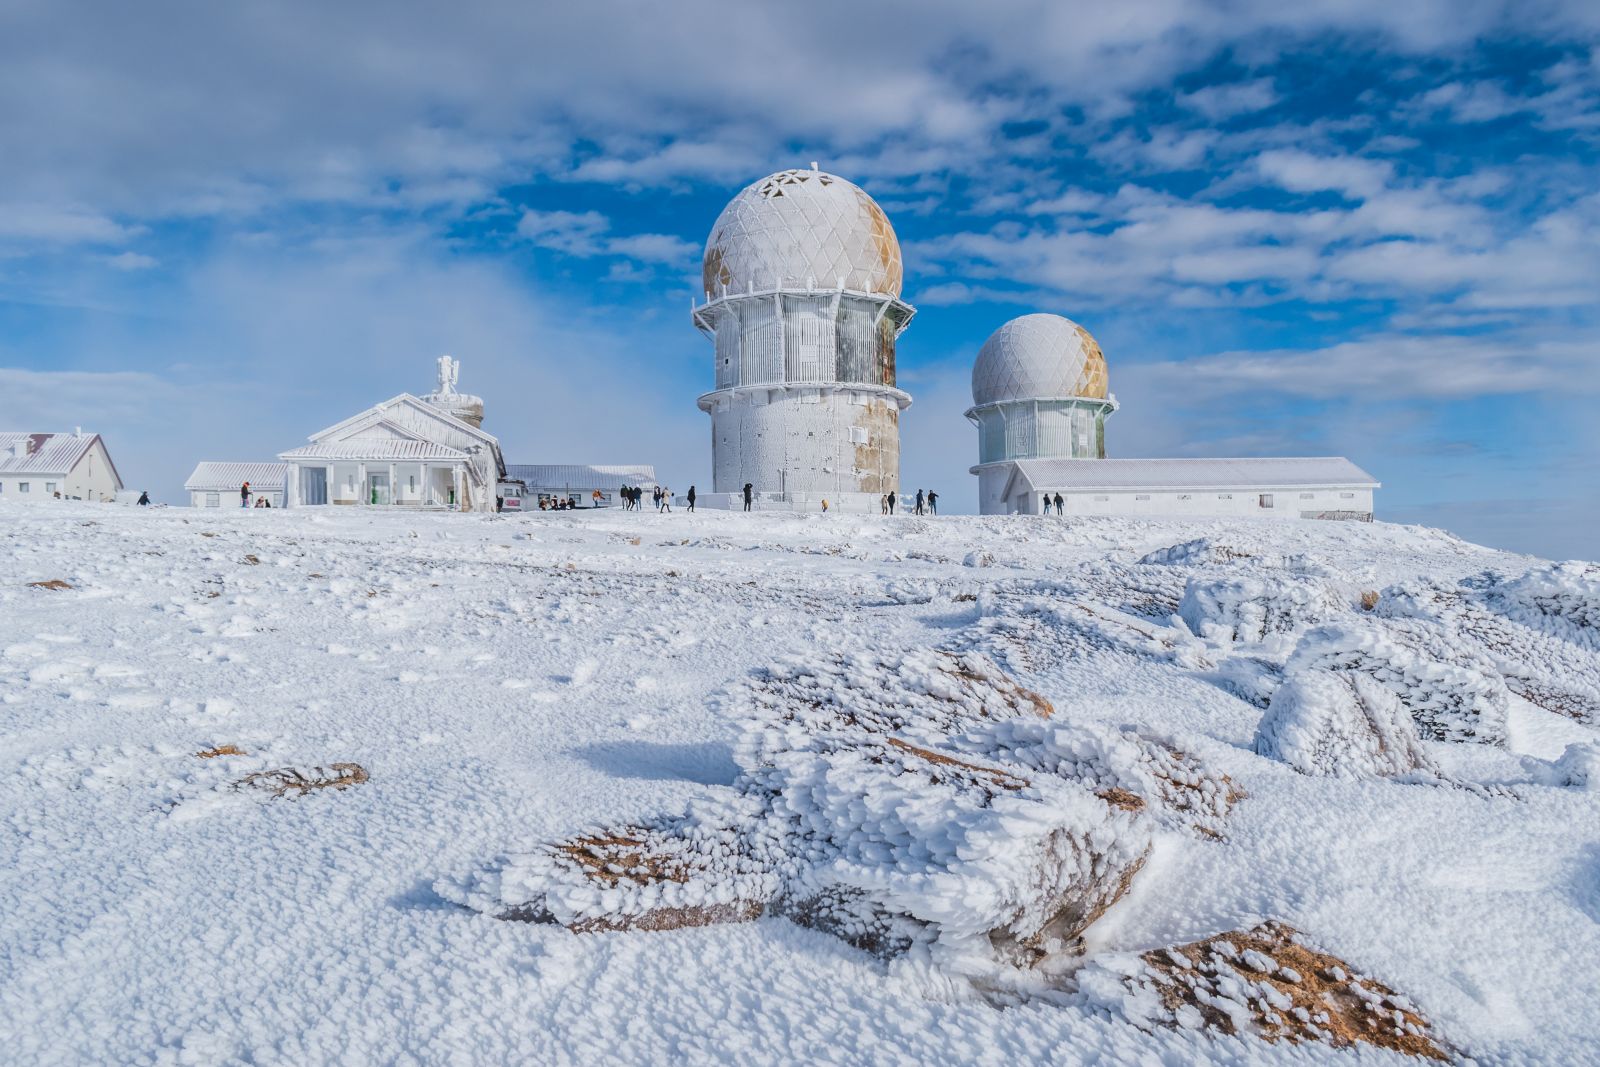 Torre da Serra observatory covered in snow.